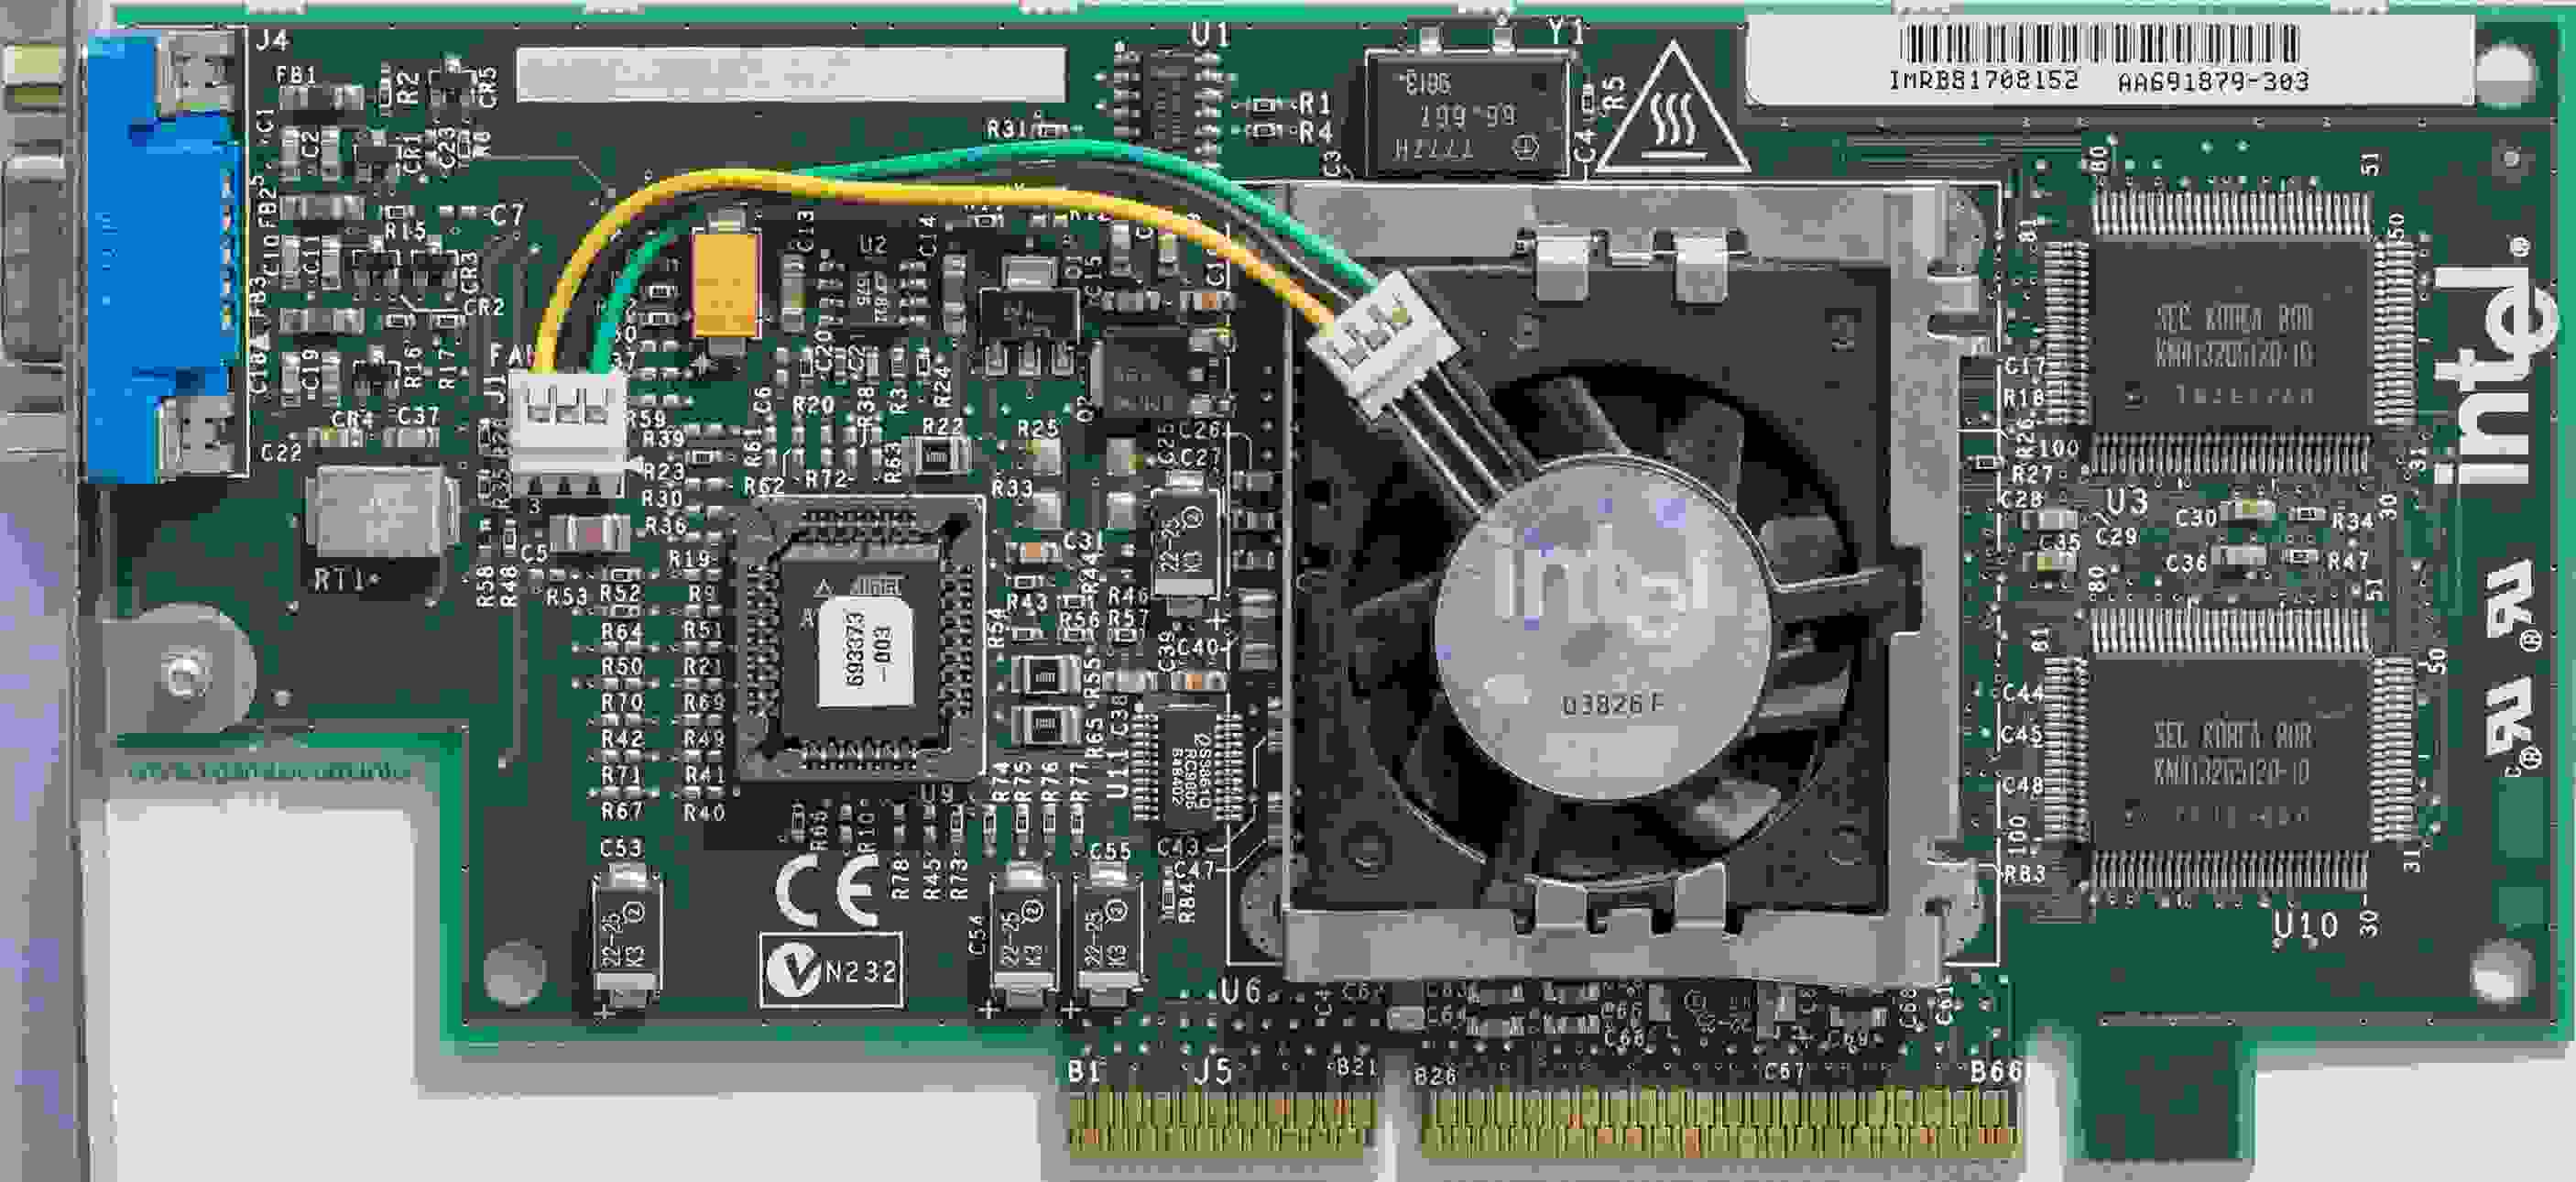 До конца года Intel выпустит 22-ядерный CPU Skylake-X, а в 2020 году — дискретную видеокарту